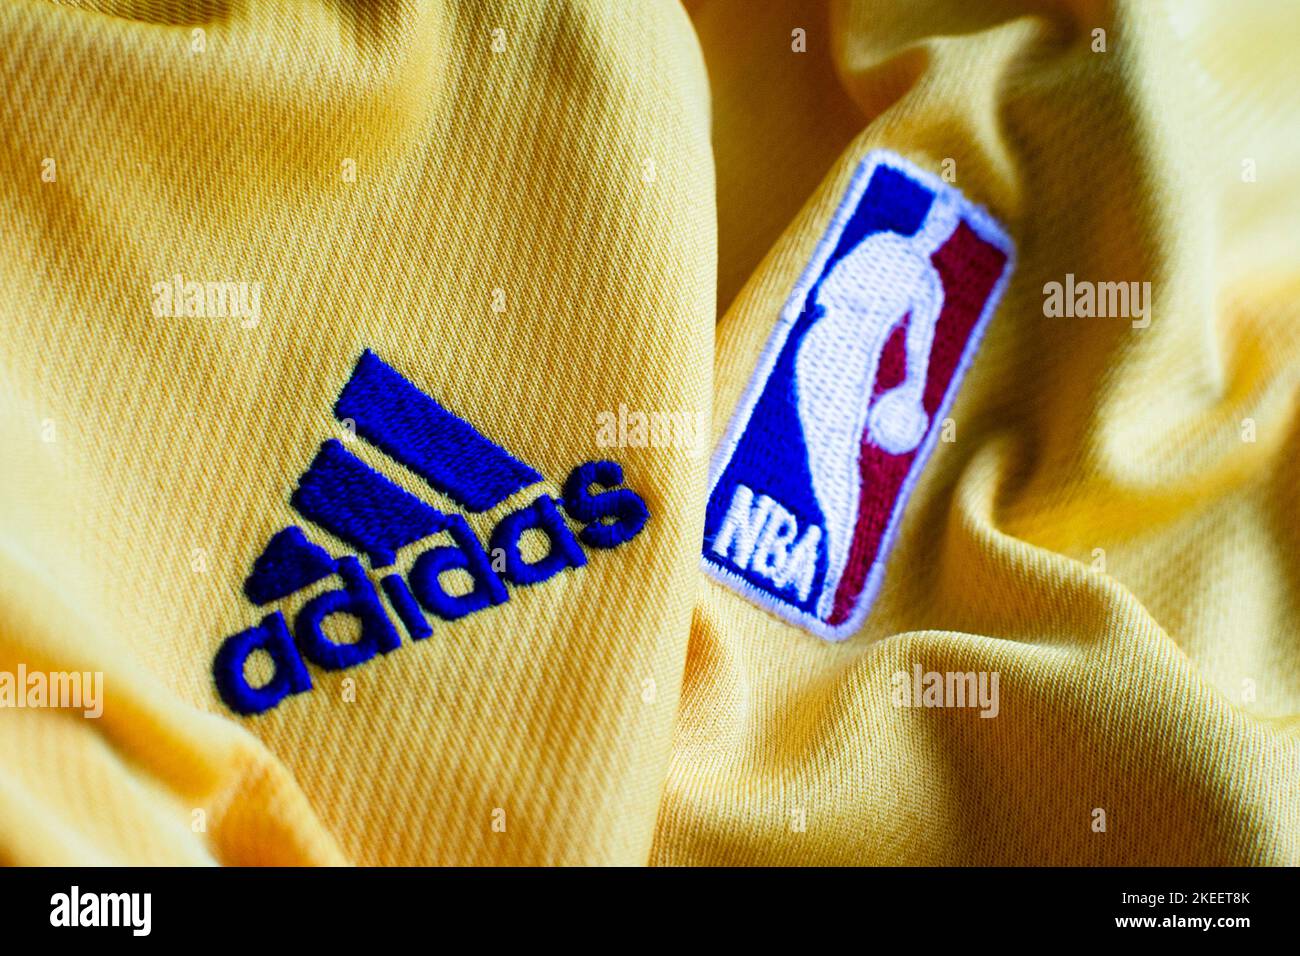 Logo NBA 'National Basketball Association' Ligue nationale professionnelle nord-américaine avec le logo Adidas cousu sur le maillot de l'équipe Los Angeles Lakers Banque D'Images